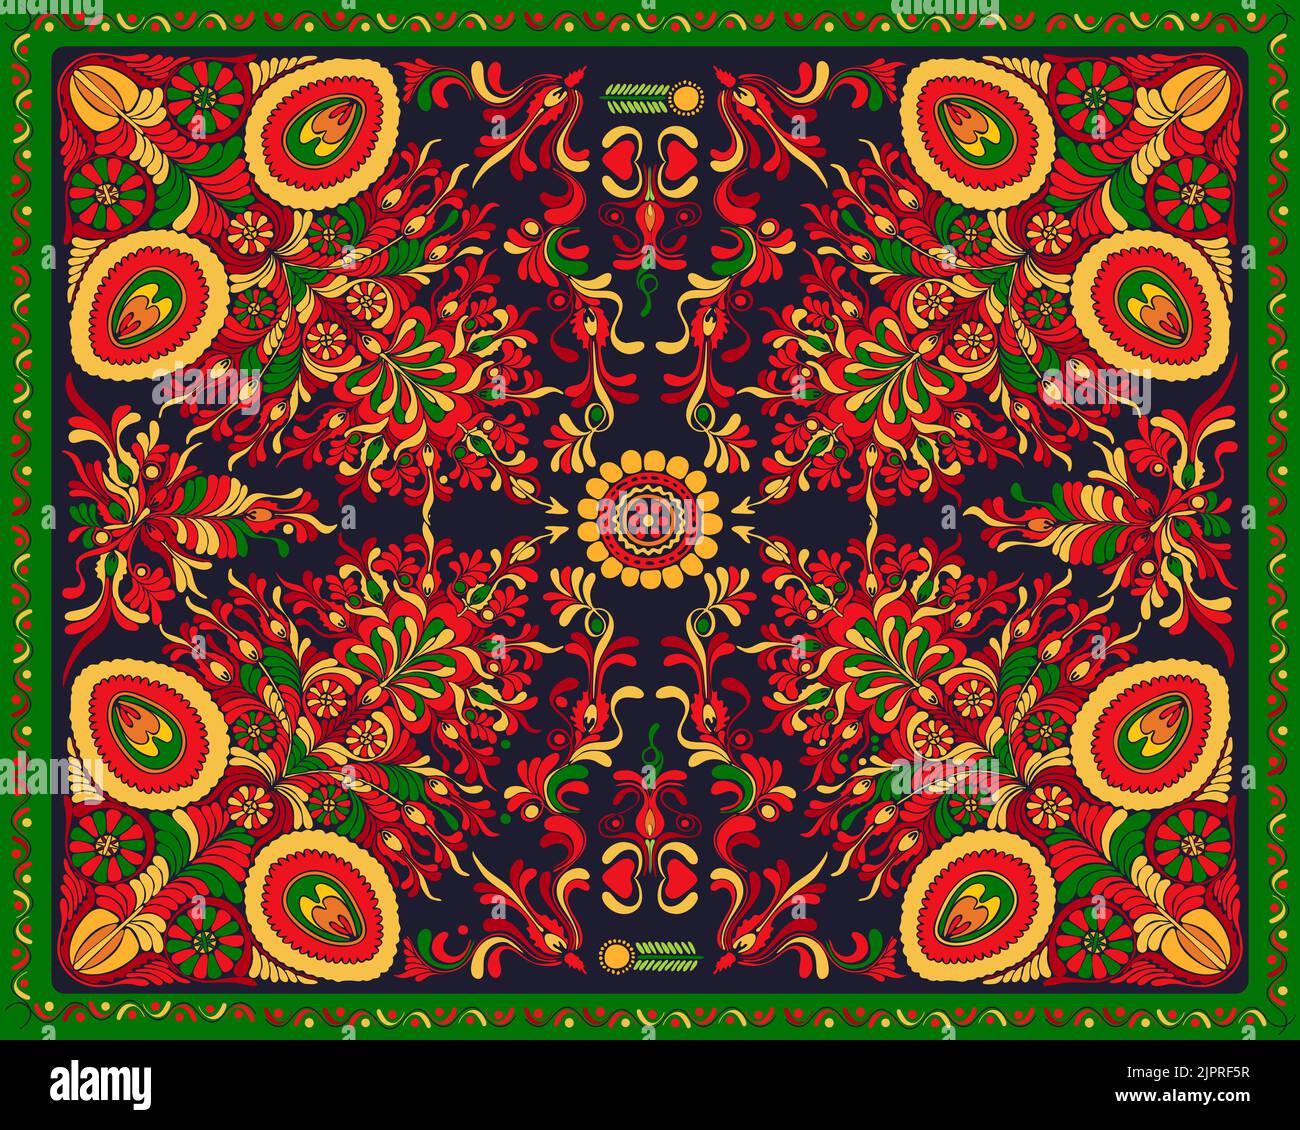 Composizione rettangolare floreale vettoriale per tappeti, asciugamani, tappeti, tessuti, tessuti, Copertina ispirata al tradizionale folclore ungherese Foto Stock